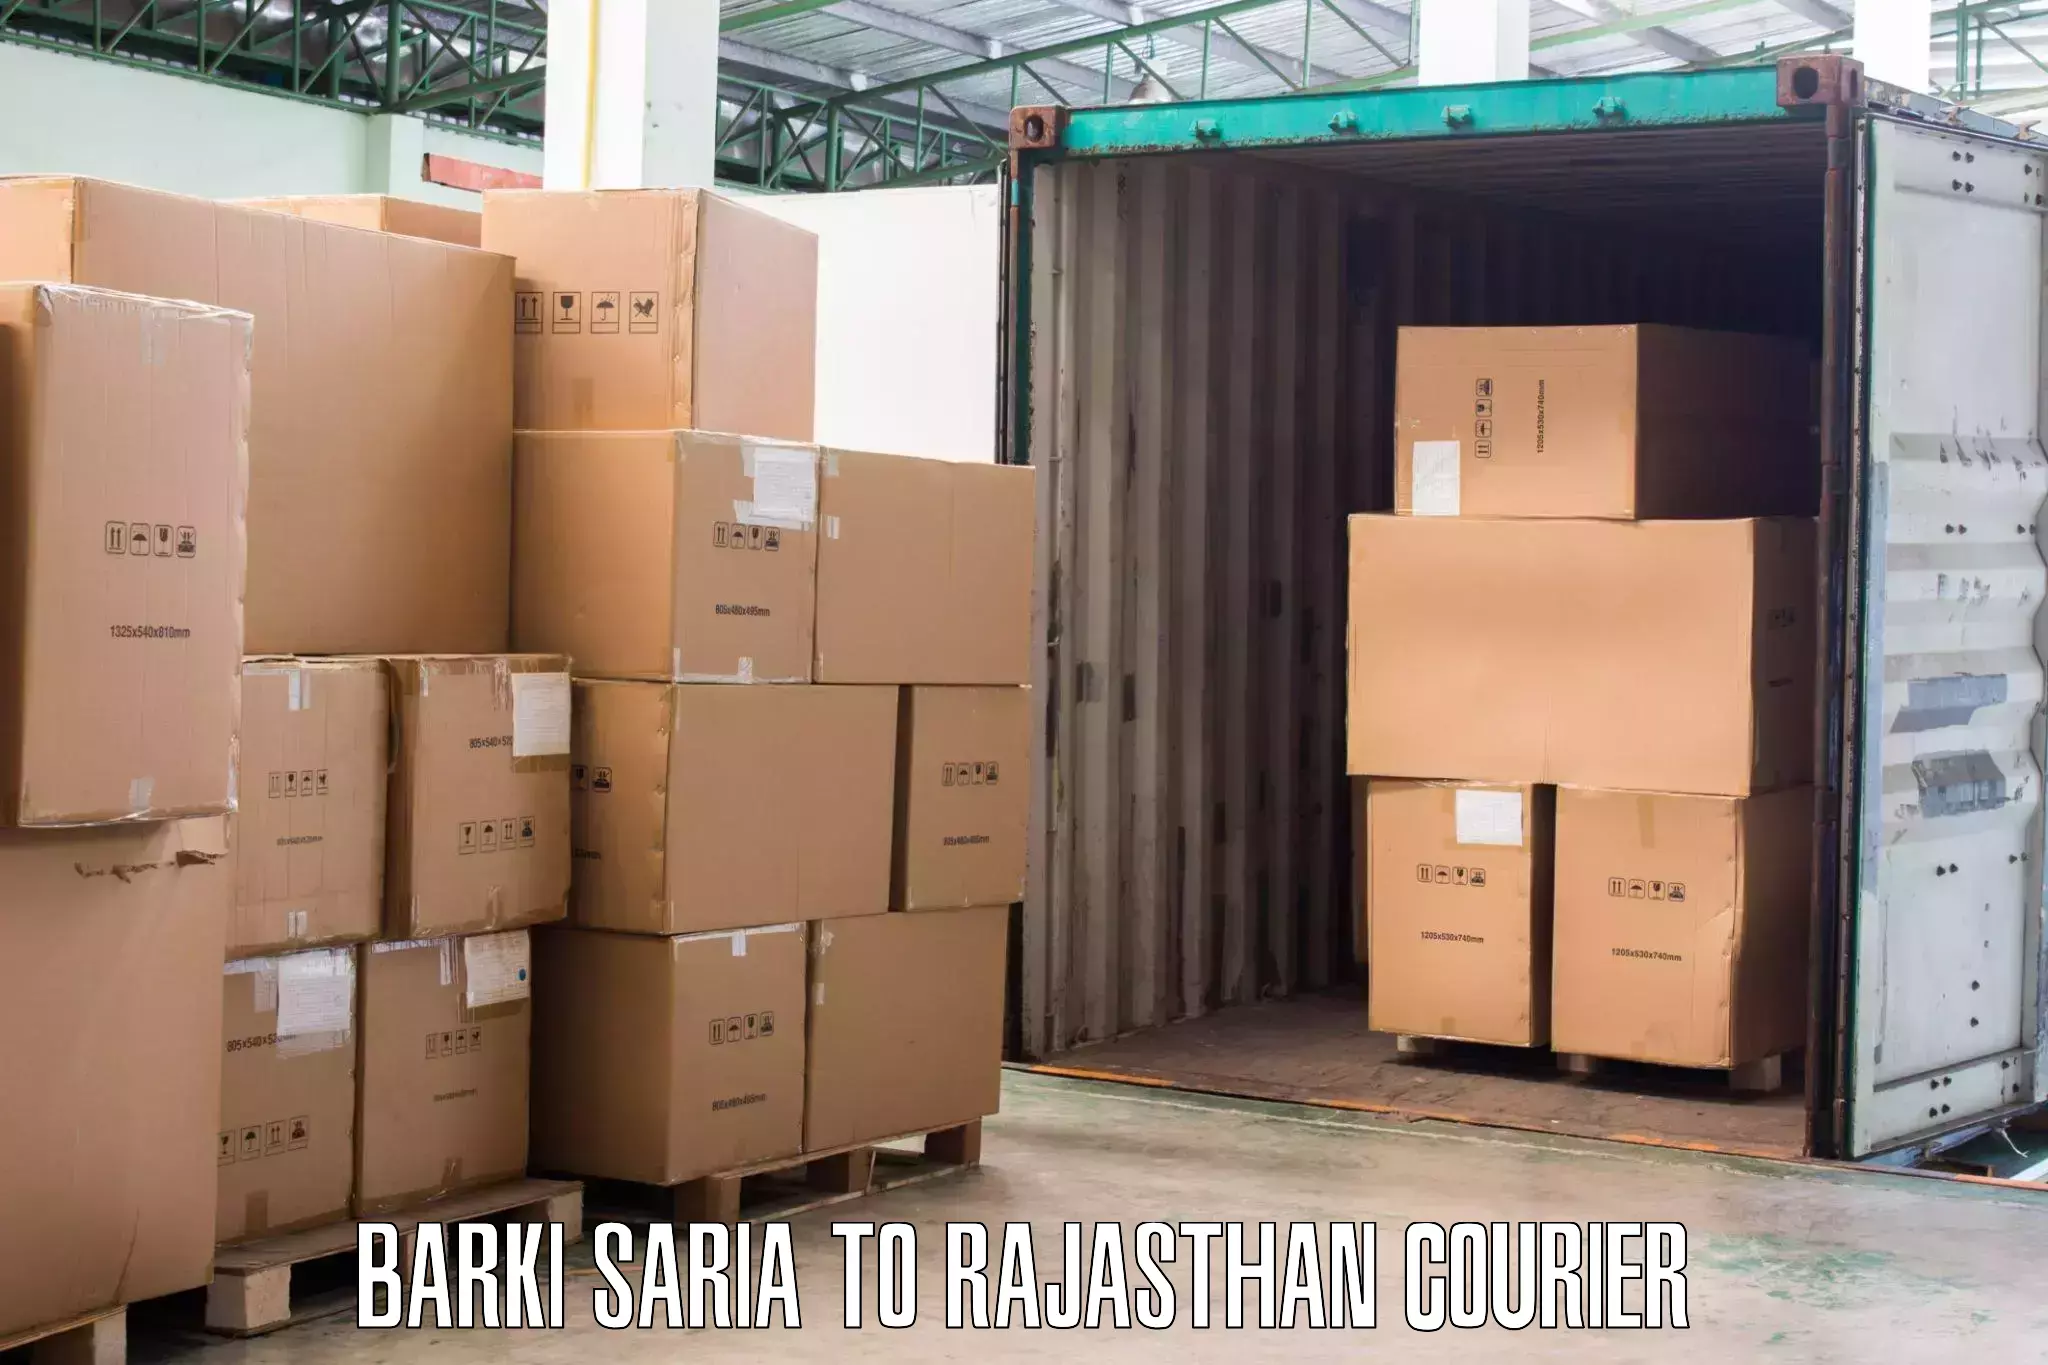 Quick furniture moving Barki Saria to Lakheri